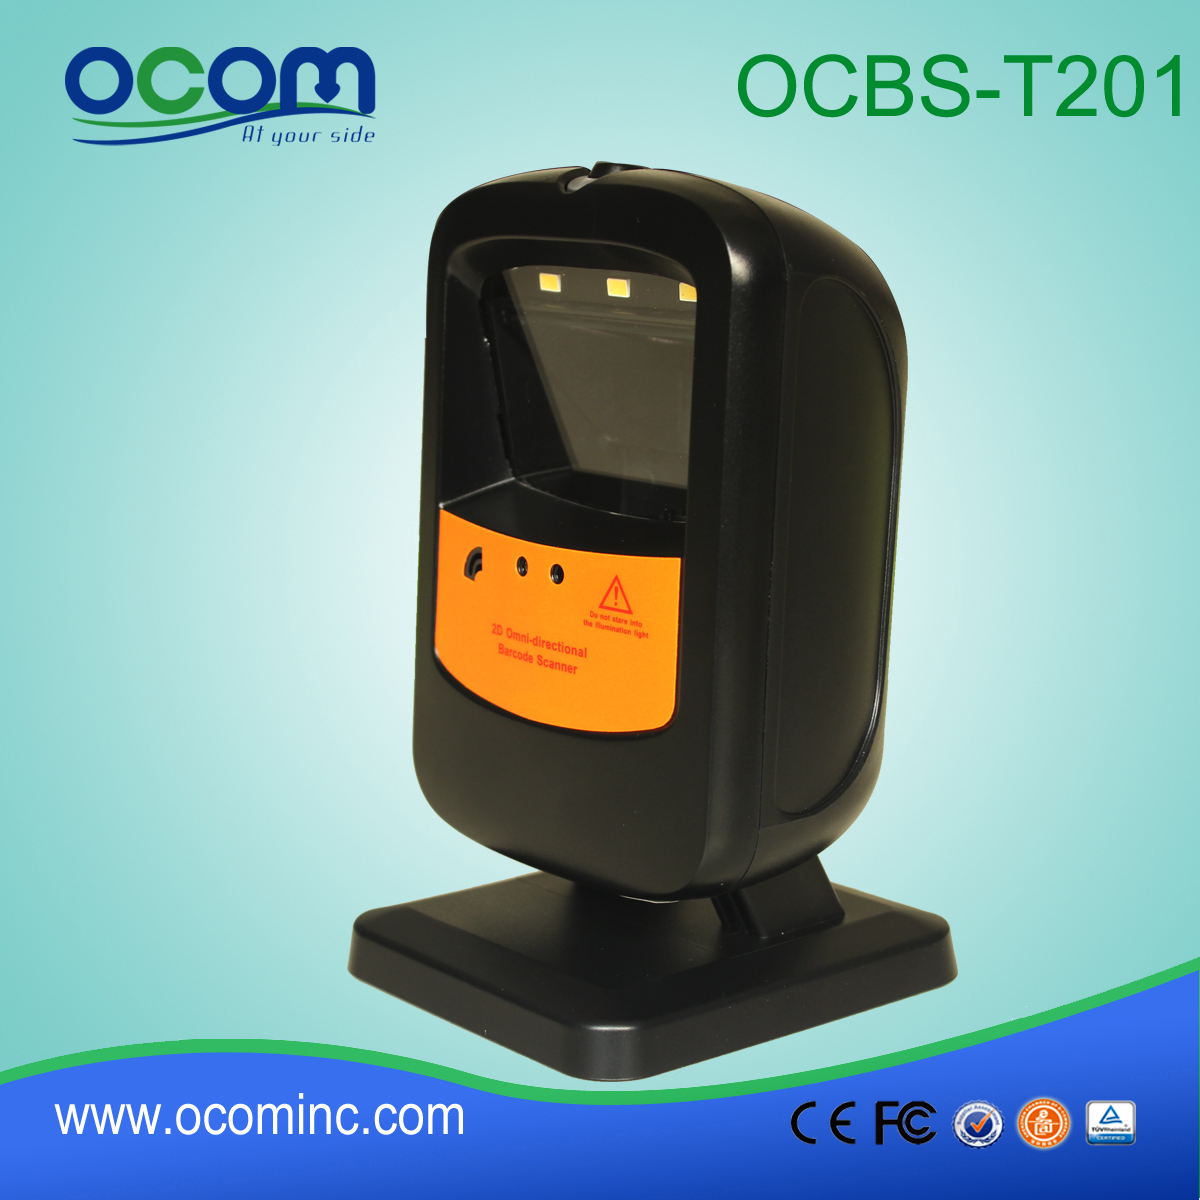 νέα πανκατευθυντική 2D κωδικών barcode scanner της OCBs-T201